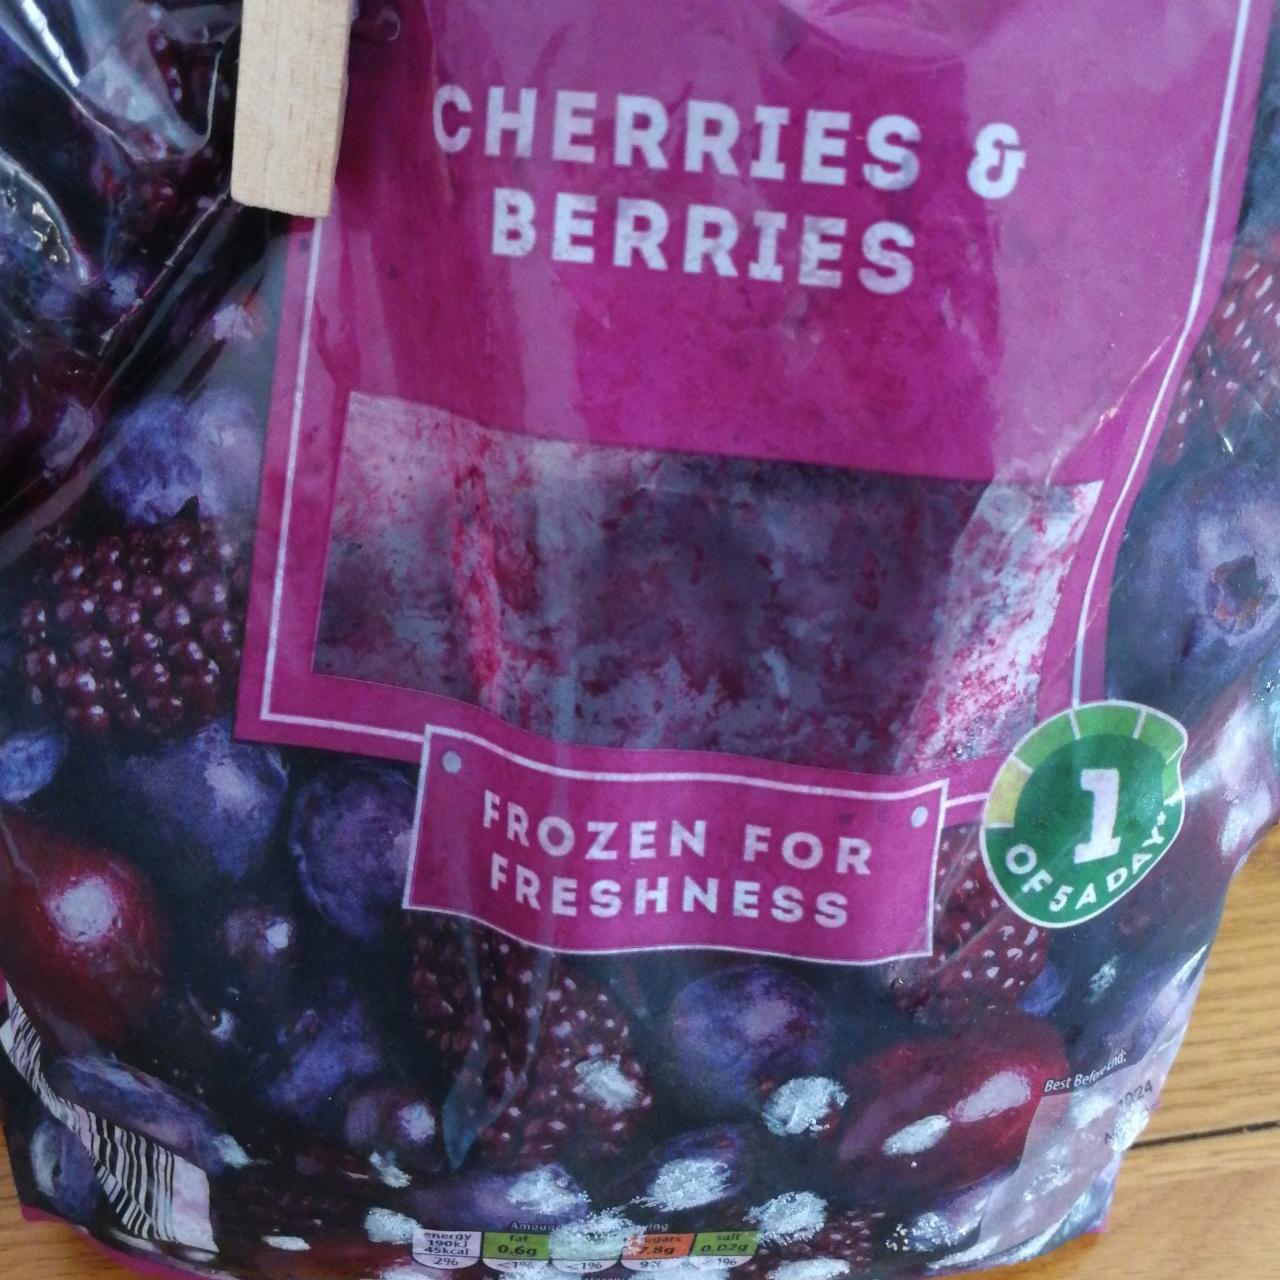 Fotografie - Cherries & berries Four seasons